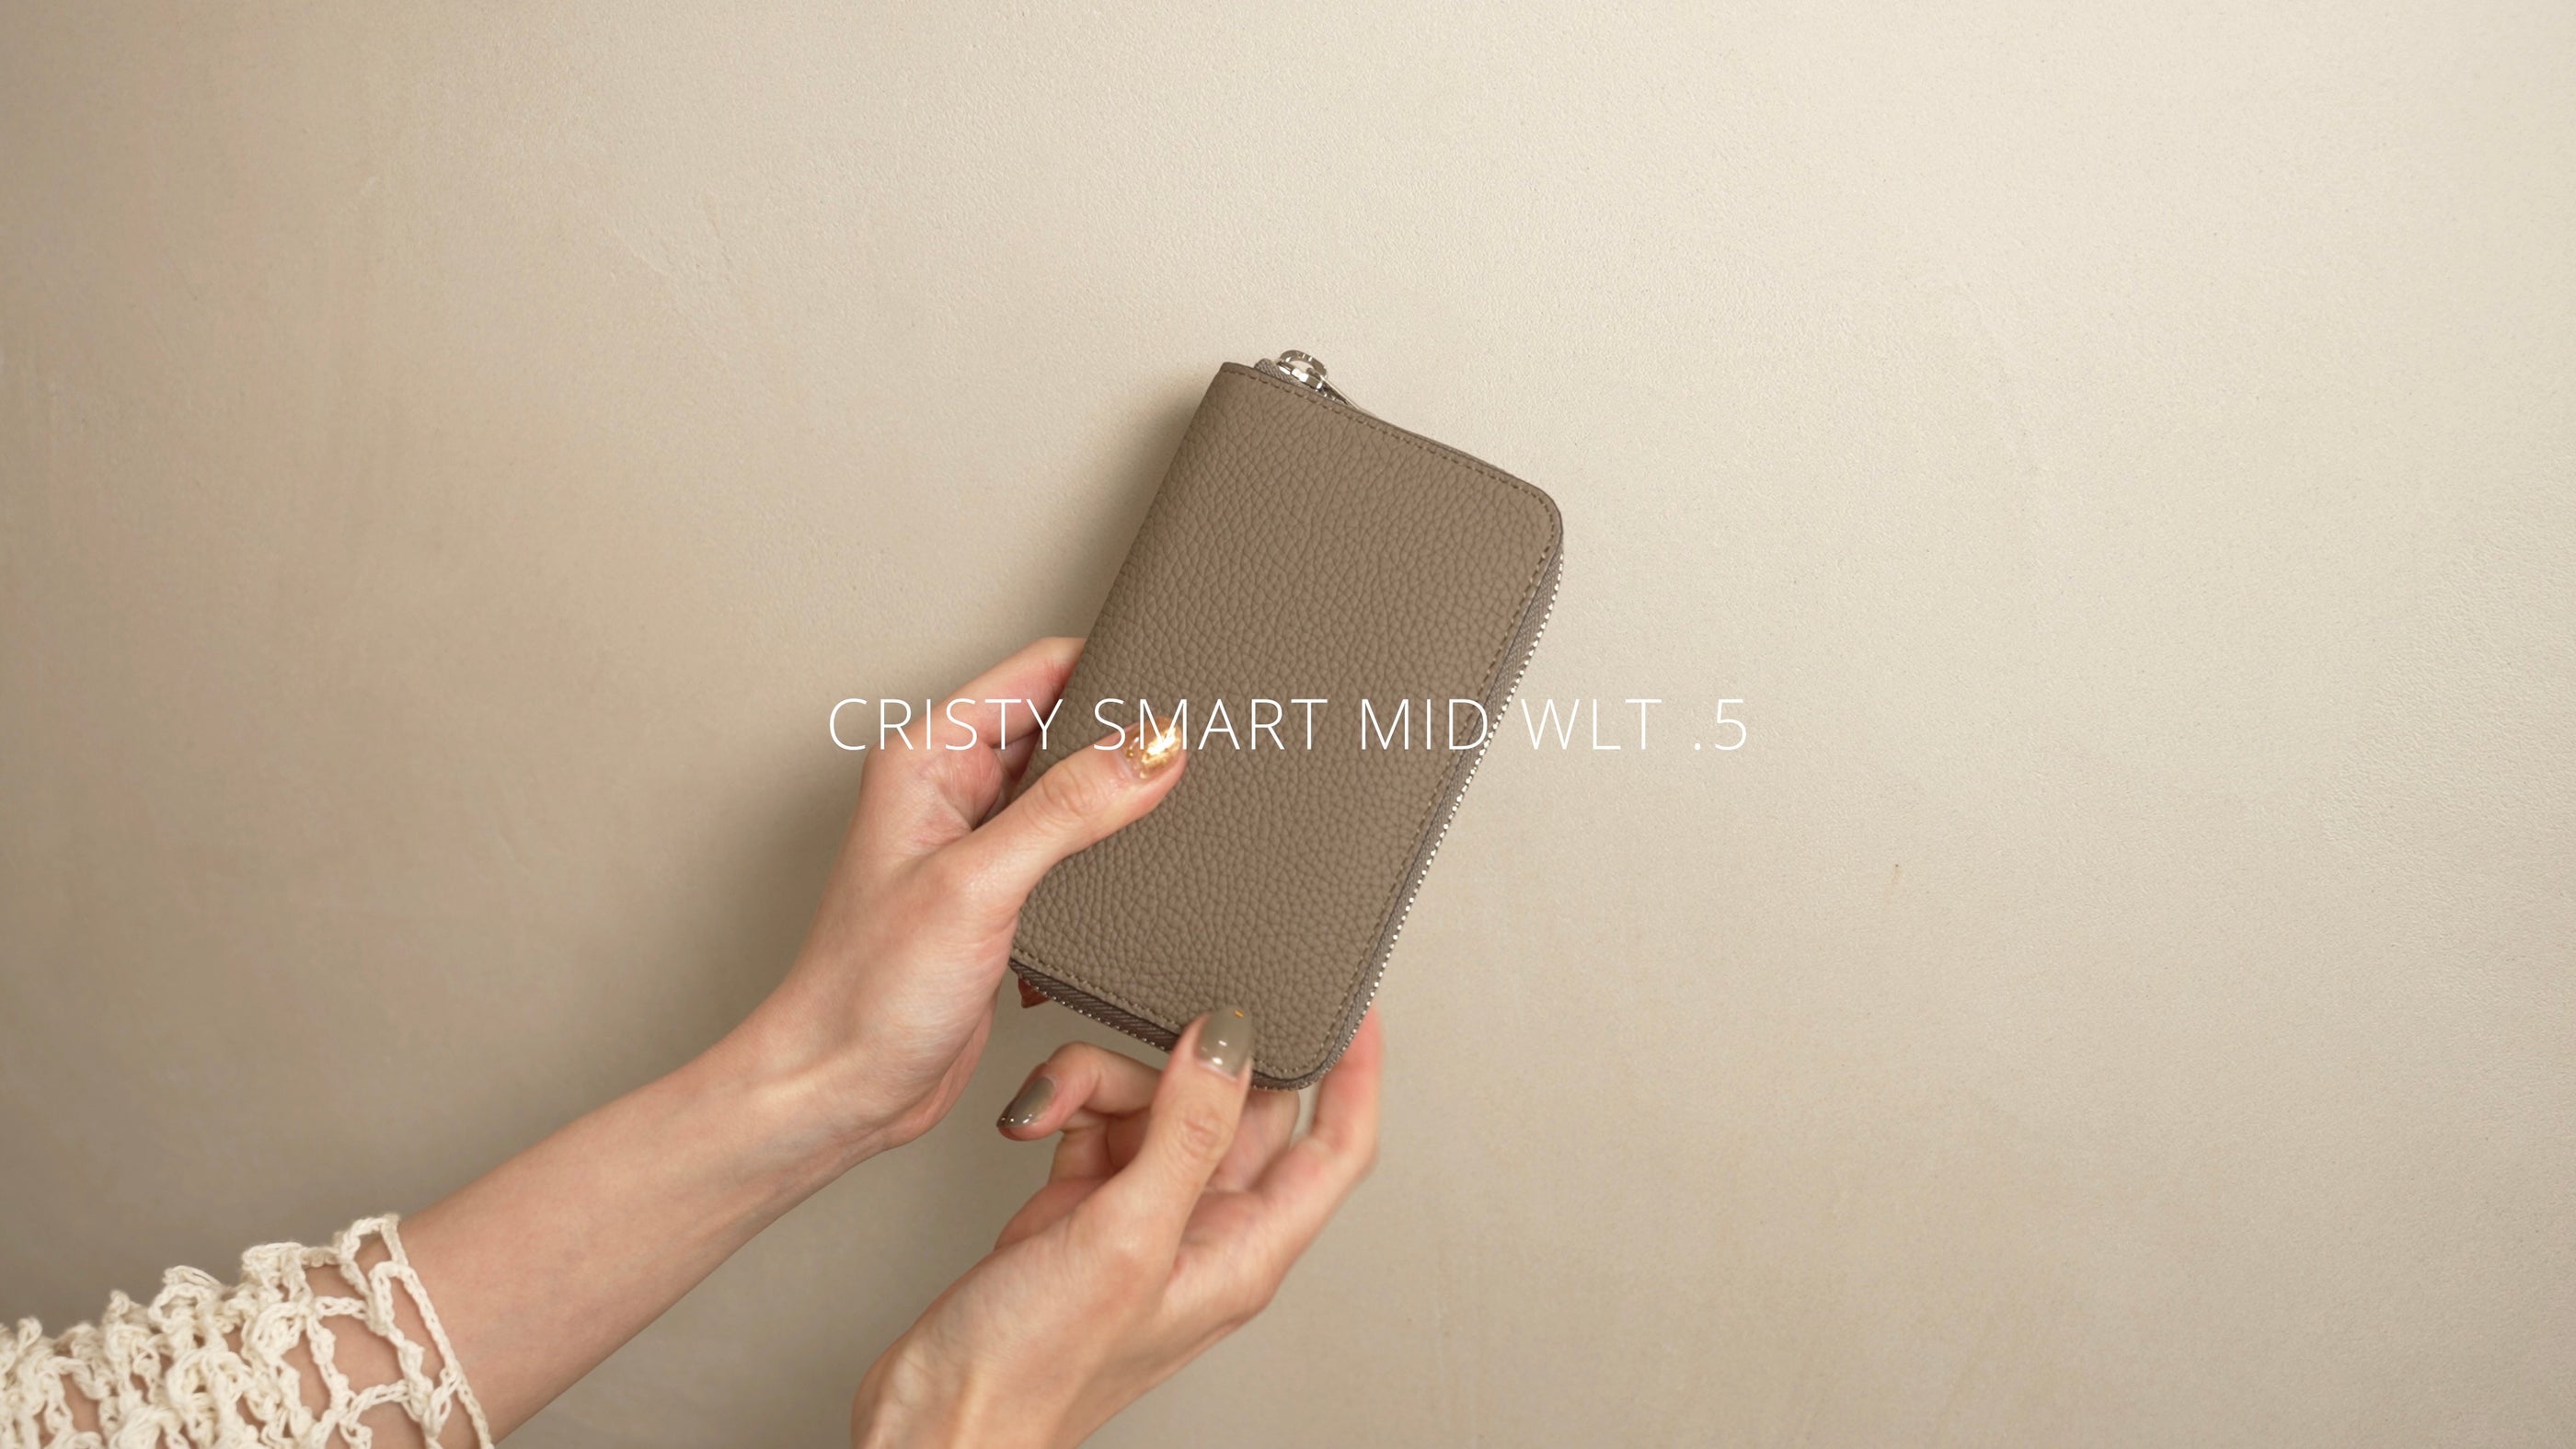 CRISTY SMART MID WLT .5 クリスティスマートミッドウォレット 革 レザー 財布 さいふ サイフ ミディアム スマートフォン サイズ ラウンドファスナー ITTI イッチ ブランド